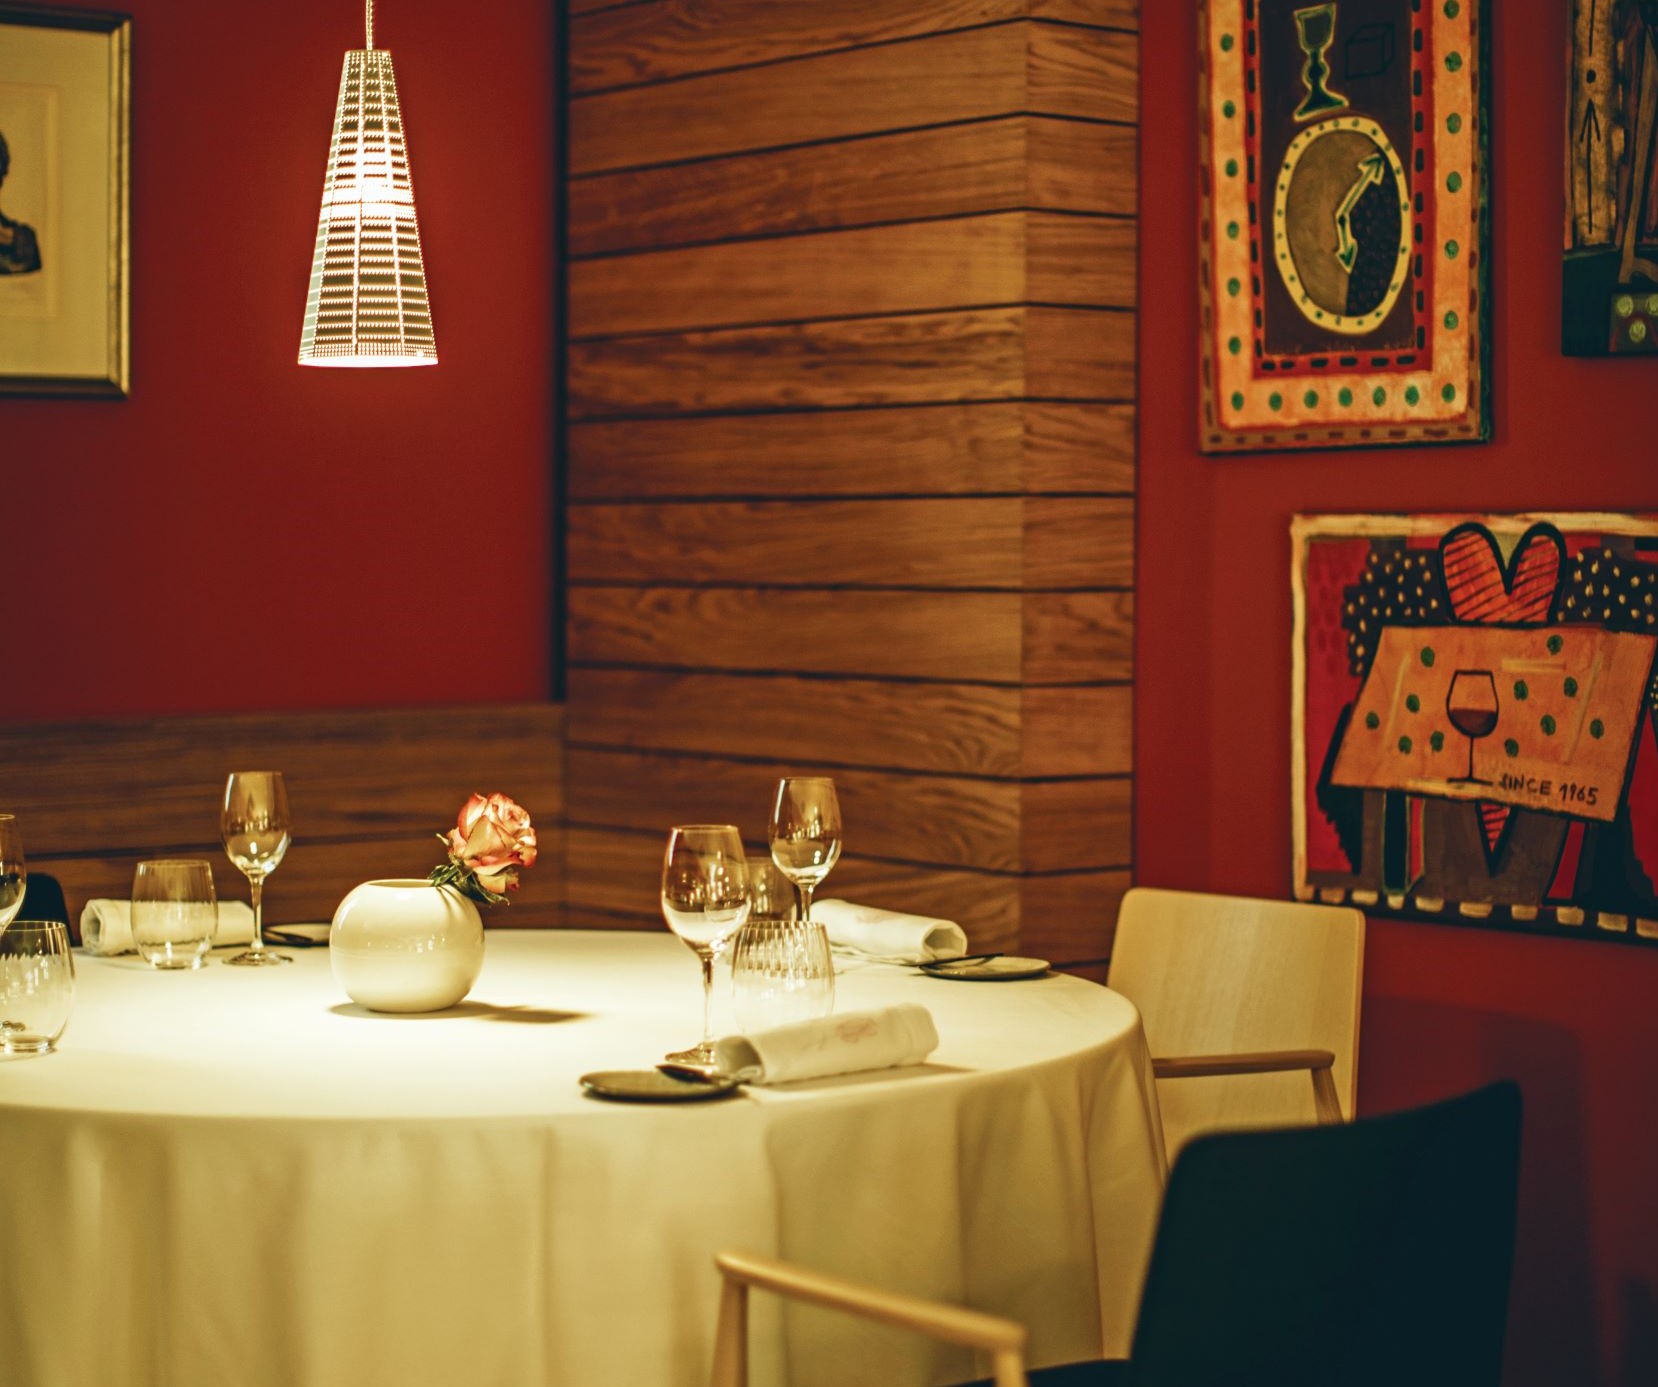 垂掛式的餐桌燈，投射出柔和的光影，增添溫馨浪漫的用餐氣息。